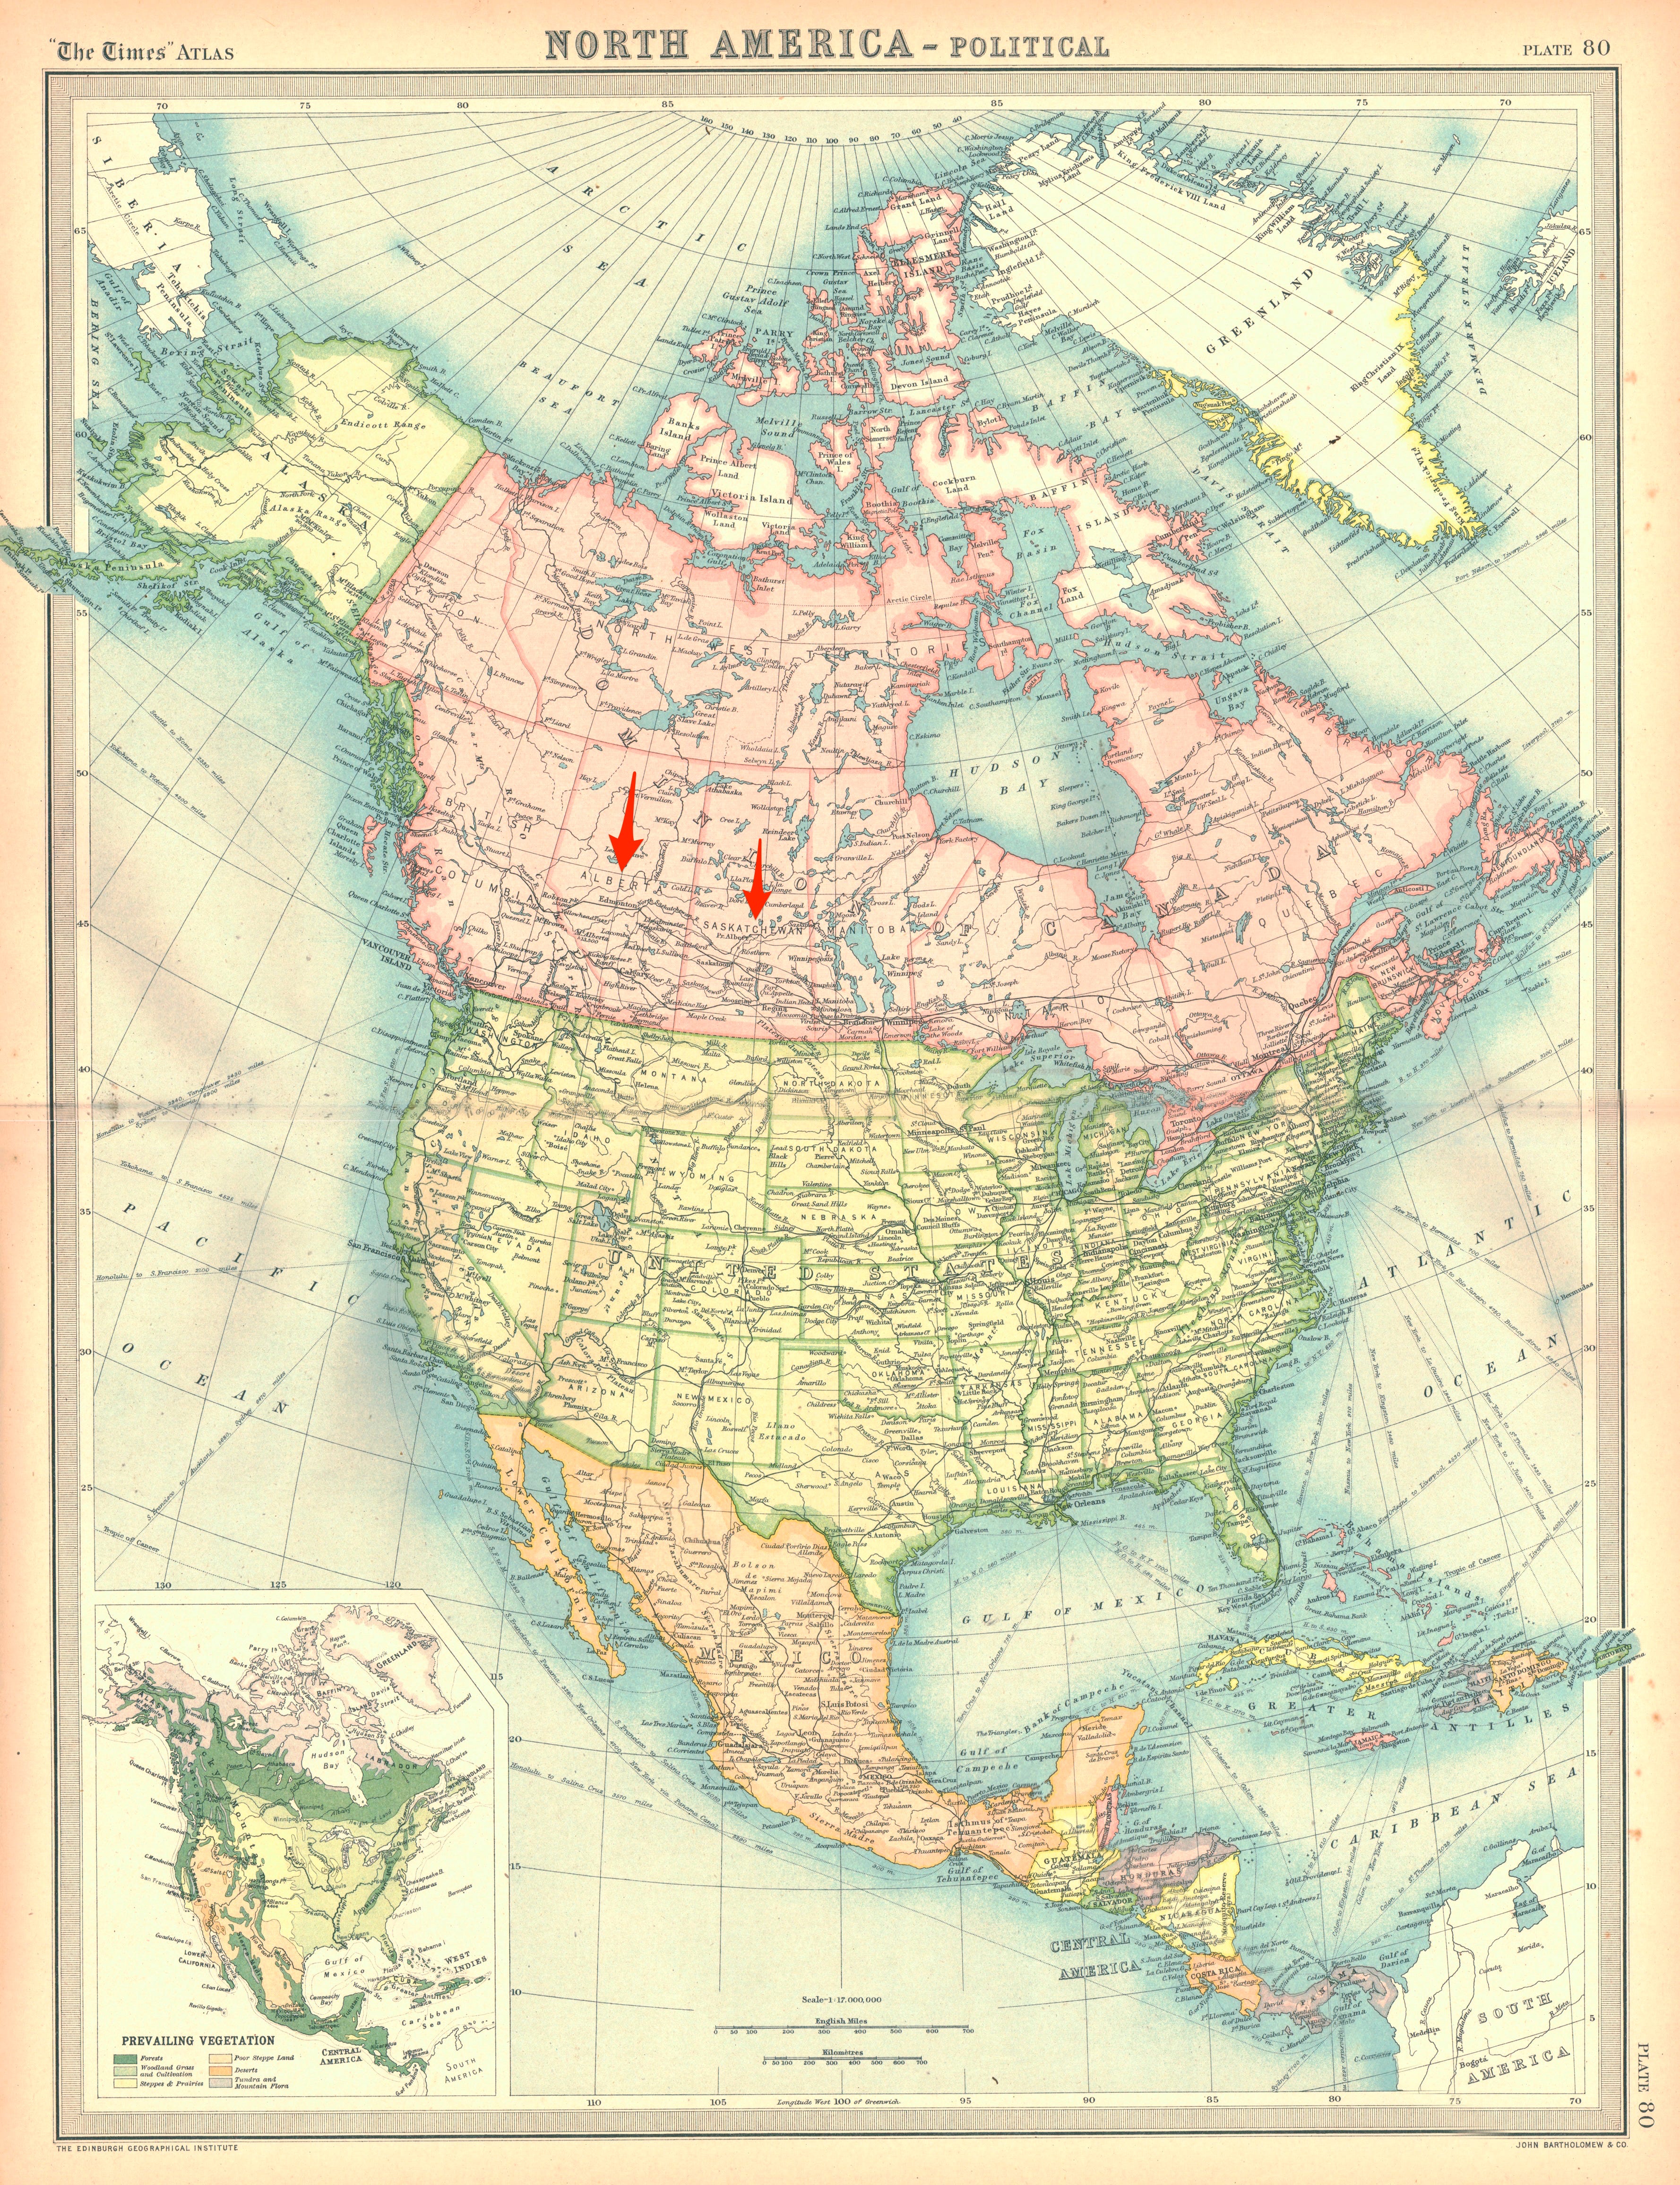 Eine Karte von Nordamerika mit Pfeilen, die auf Alberta und Saskatchewan in Kanada zeigen, wo der chinesische Überwachungsballon schwebend gesehen wurde.